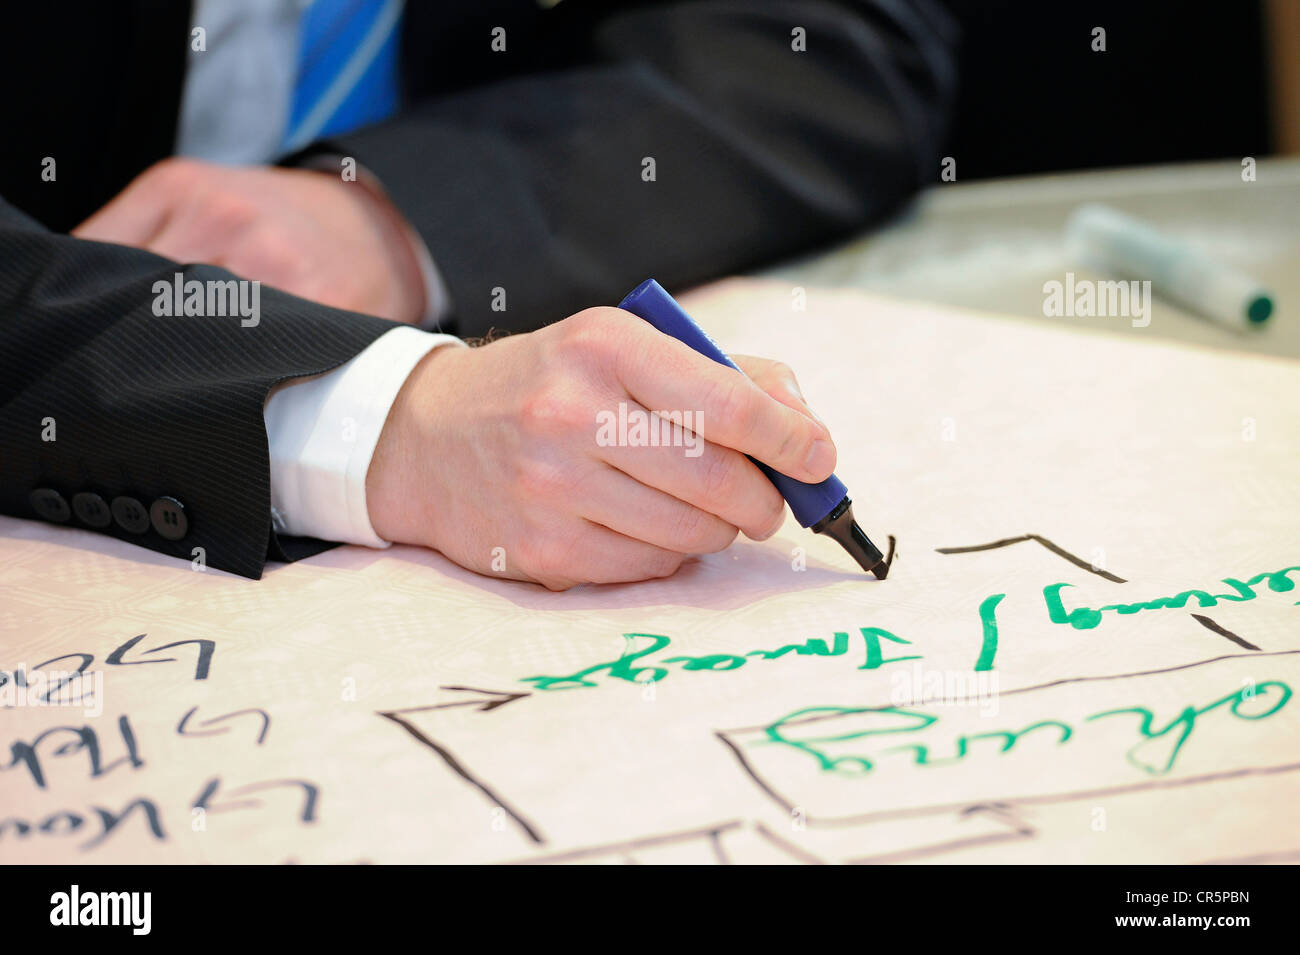 Mains d'un homme d'affaires écrit avec un stylo dans la main droite, Thuringe, Allemagne, Europe Banque D'Images